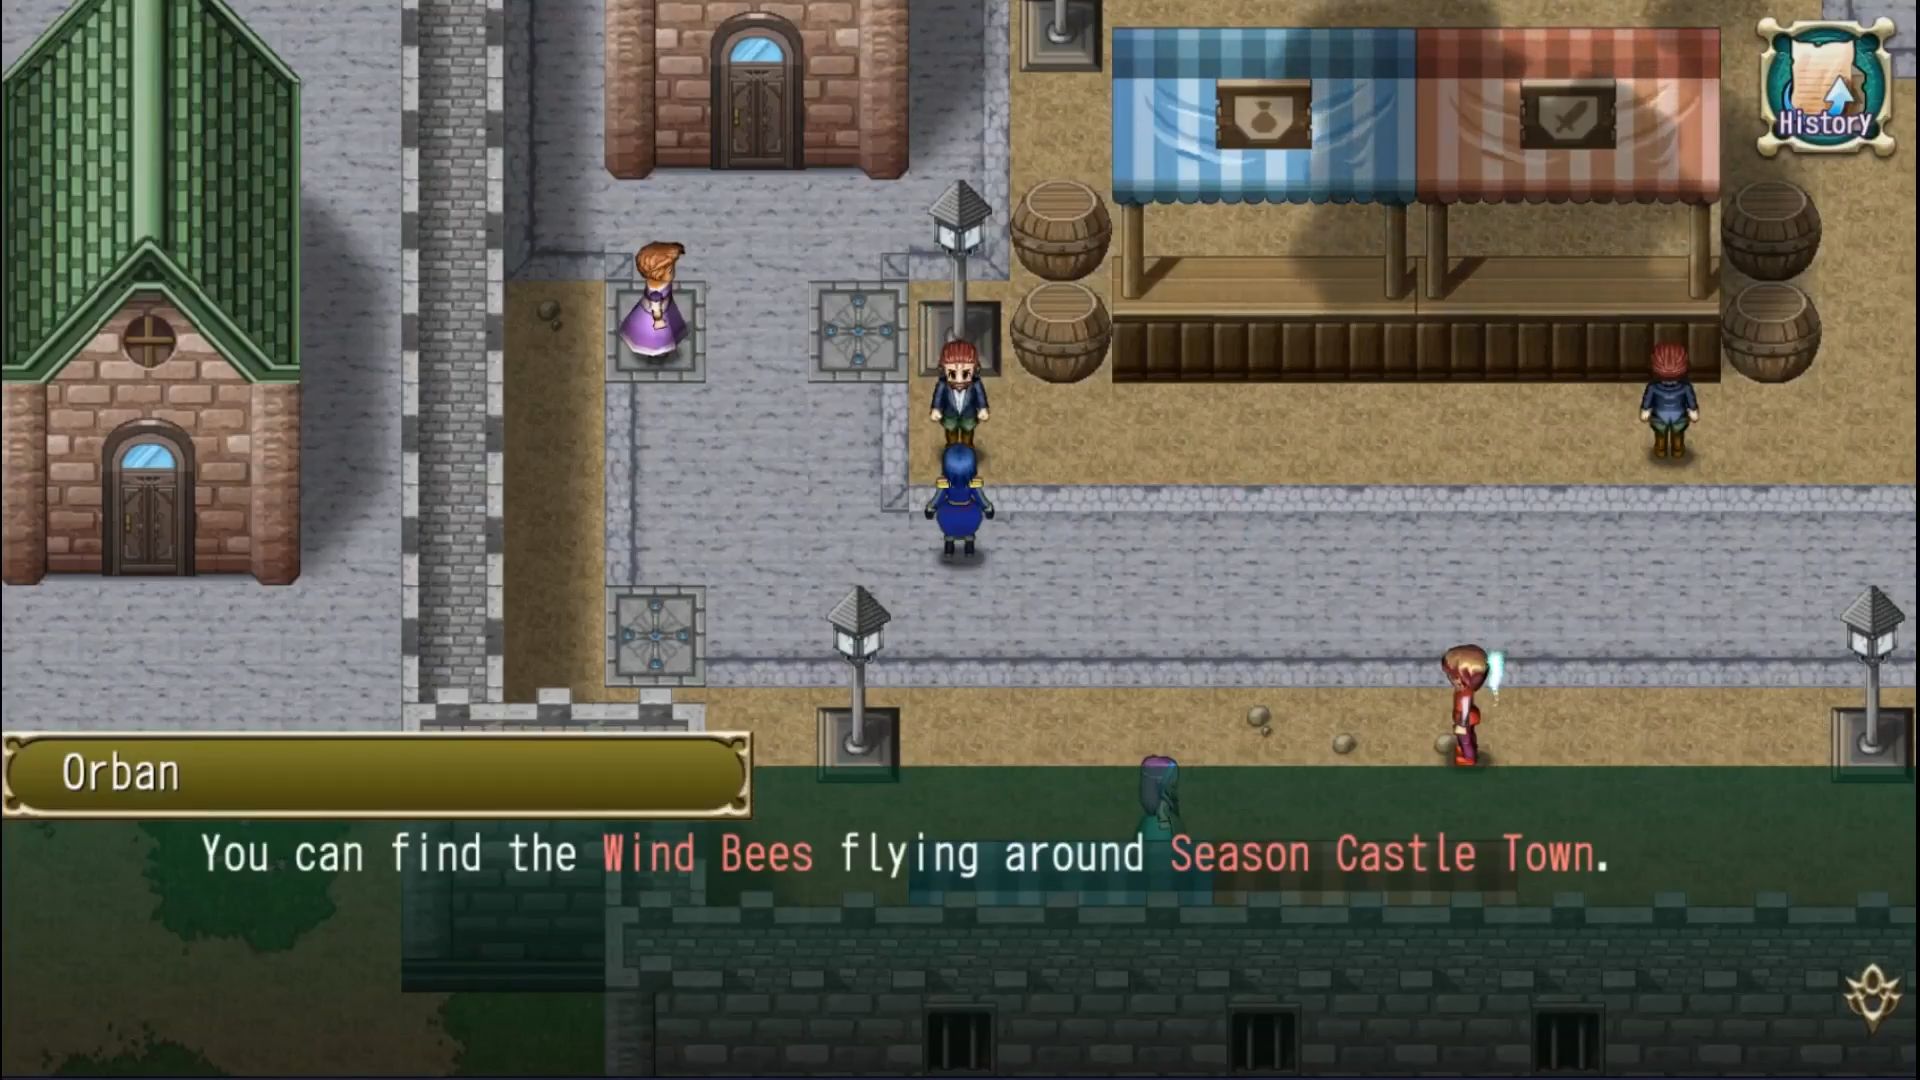 RPG Glorious Savior captura de pantalla 1